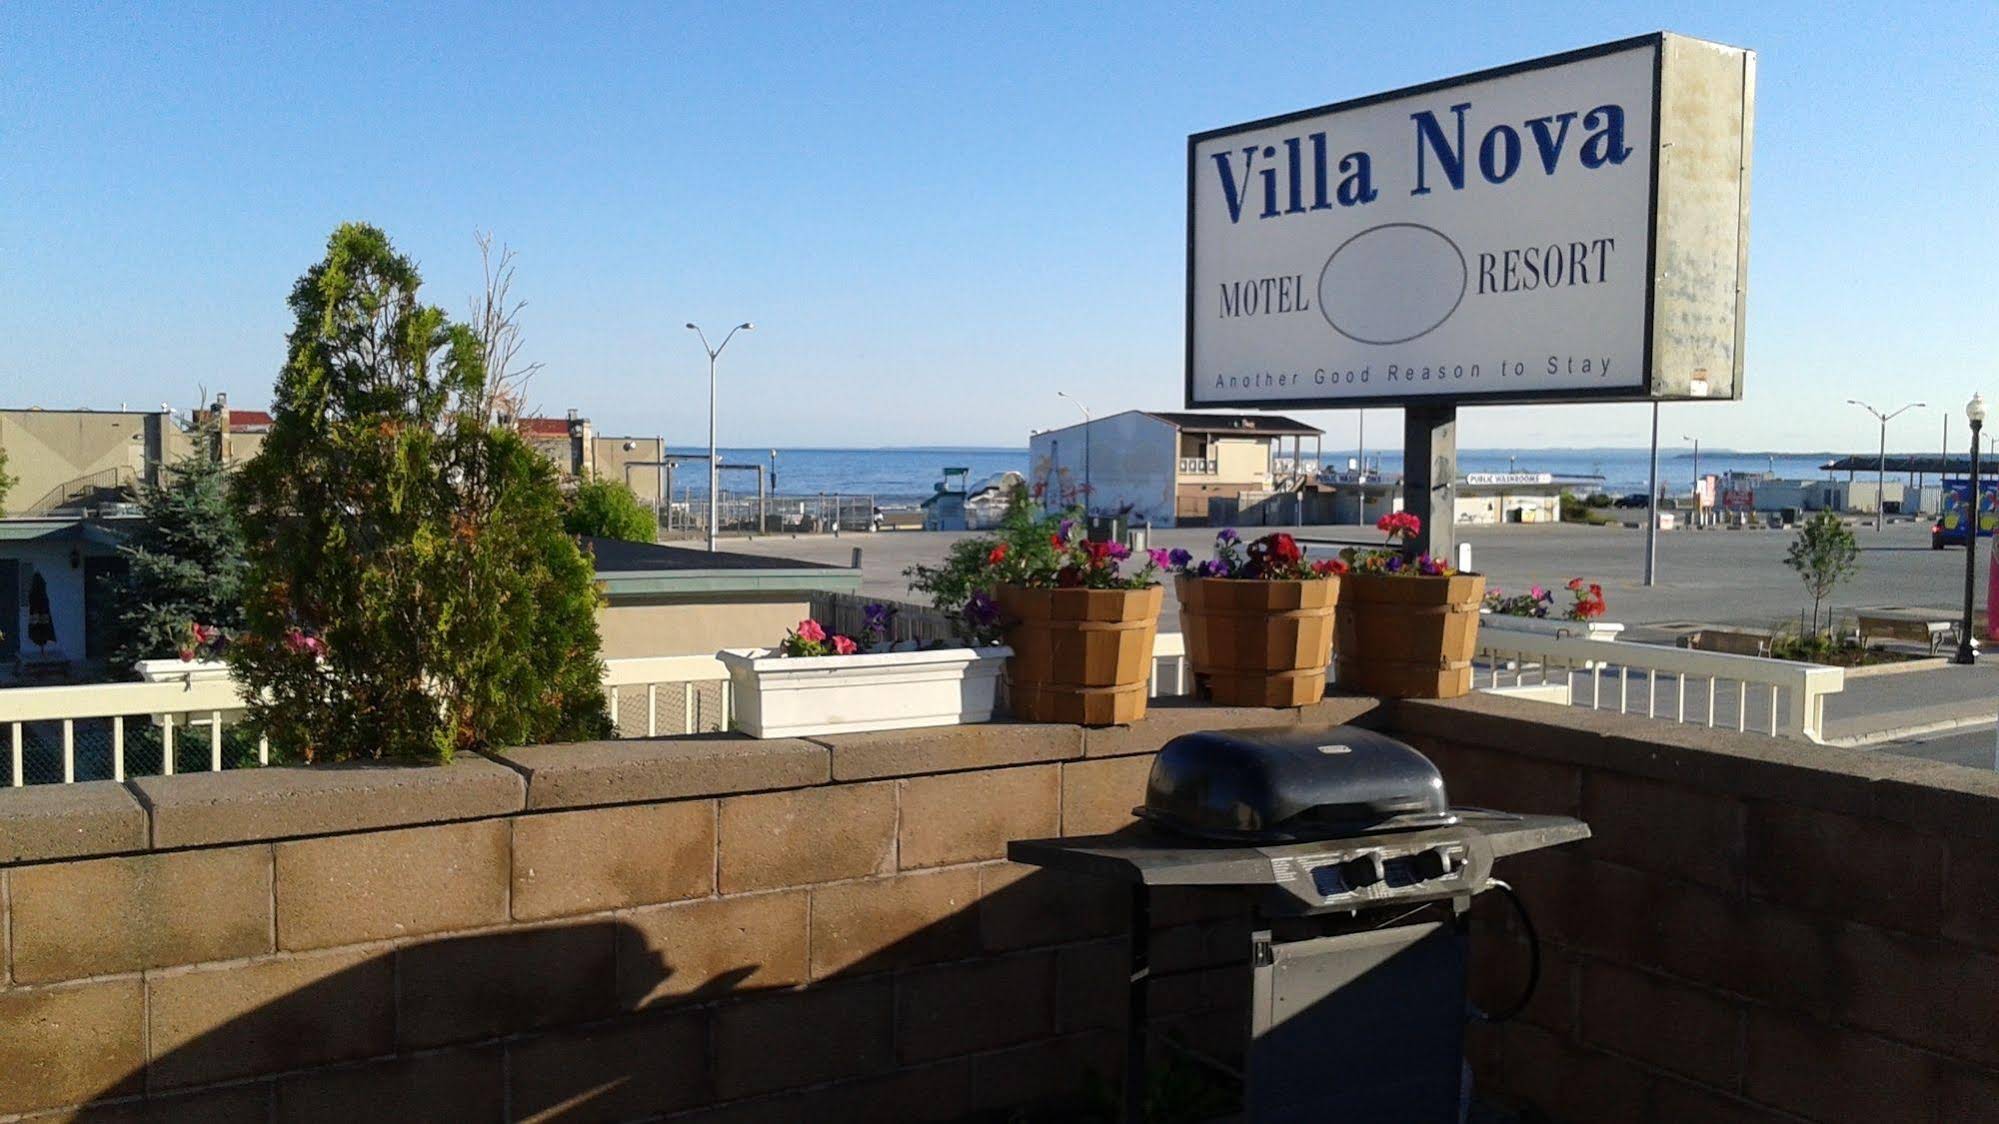 Villa Nova Motel Resort